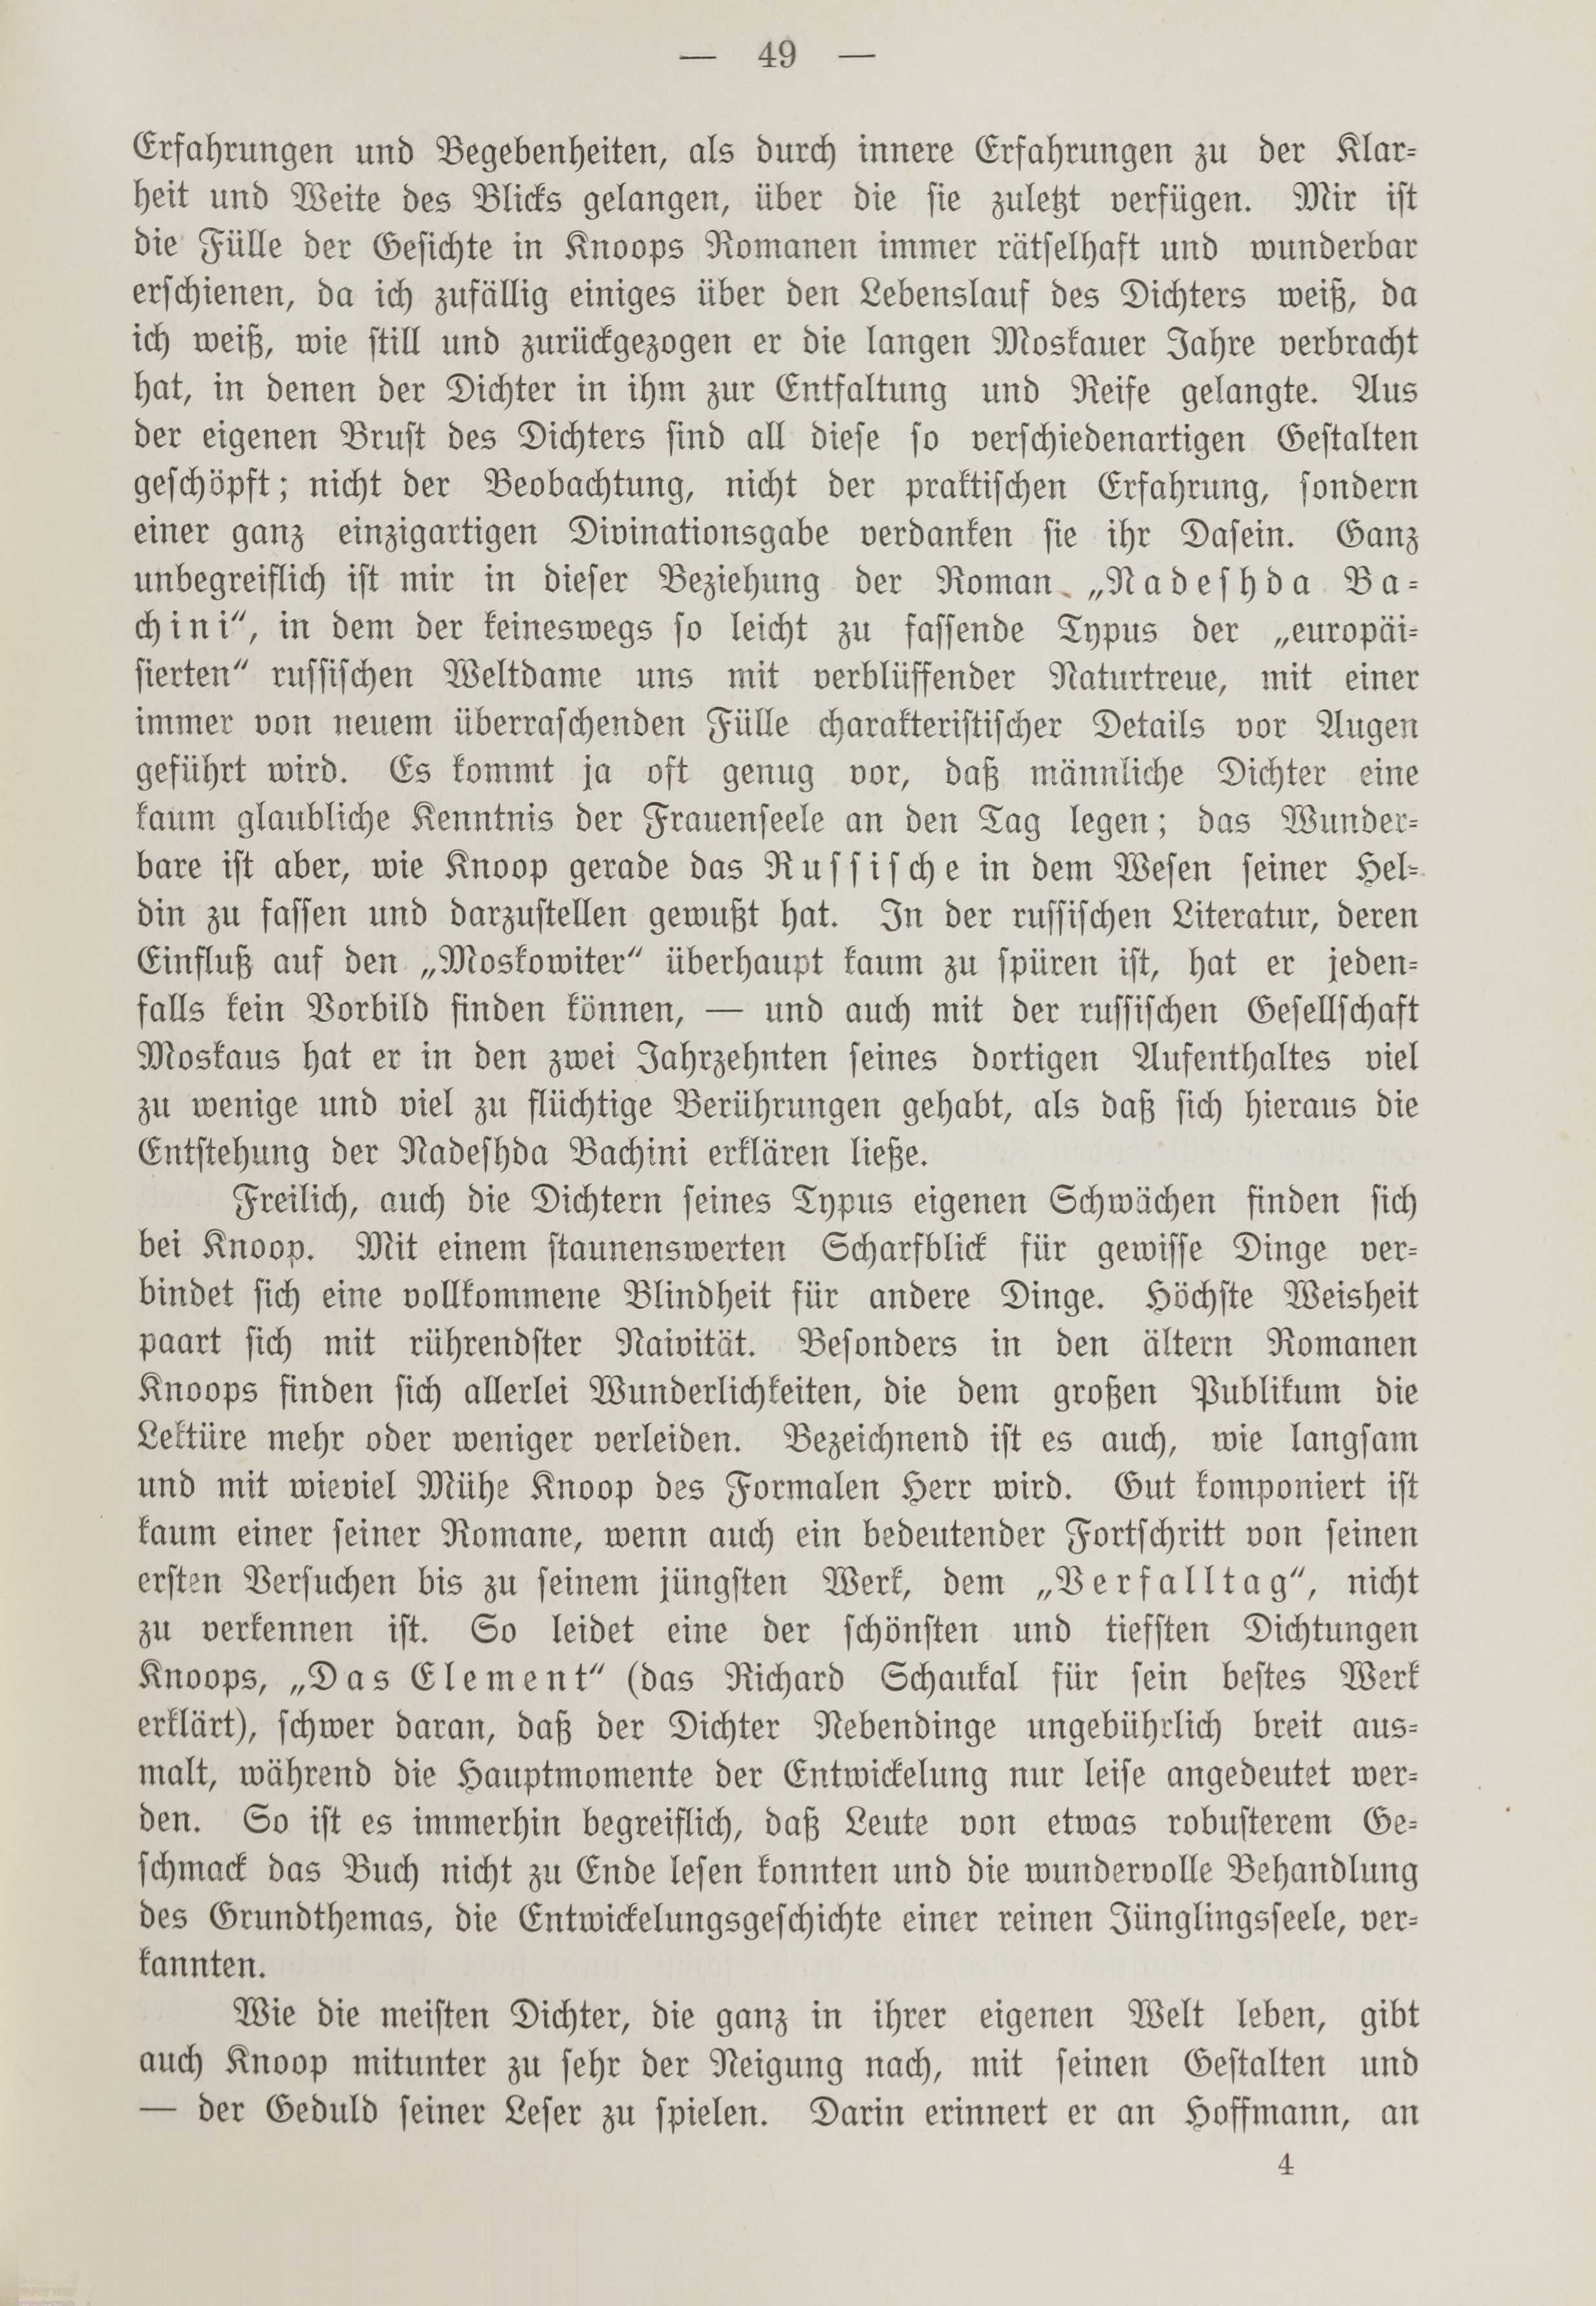 Deutsche Monatsschrift für Russland [1] (1912) | 56. (49) Main body of text